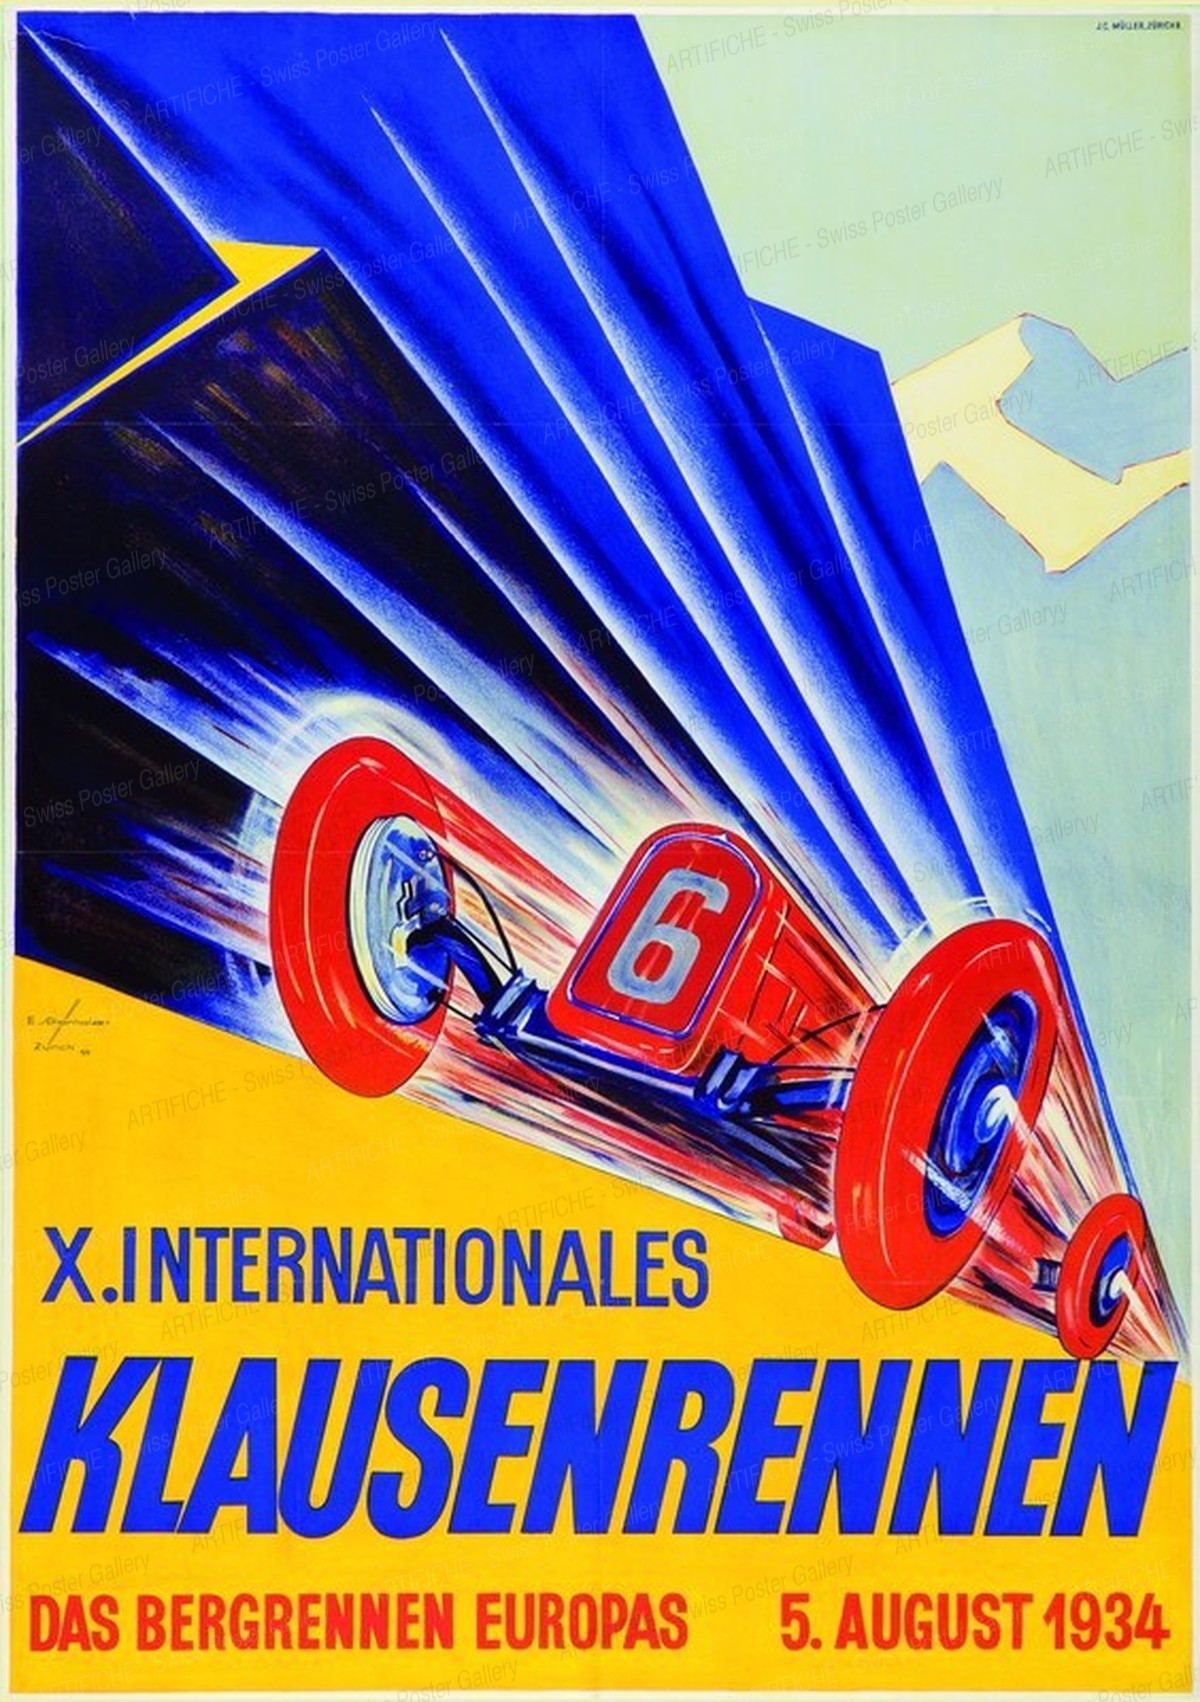 X. Internationales Klausen-Rennen 1934 – Das Bergrennen Europas (Reprint), Ernst Schönholzer